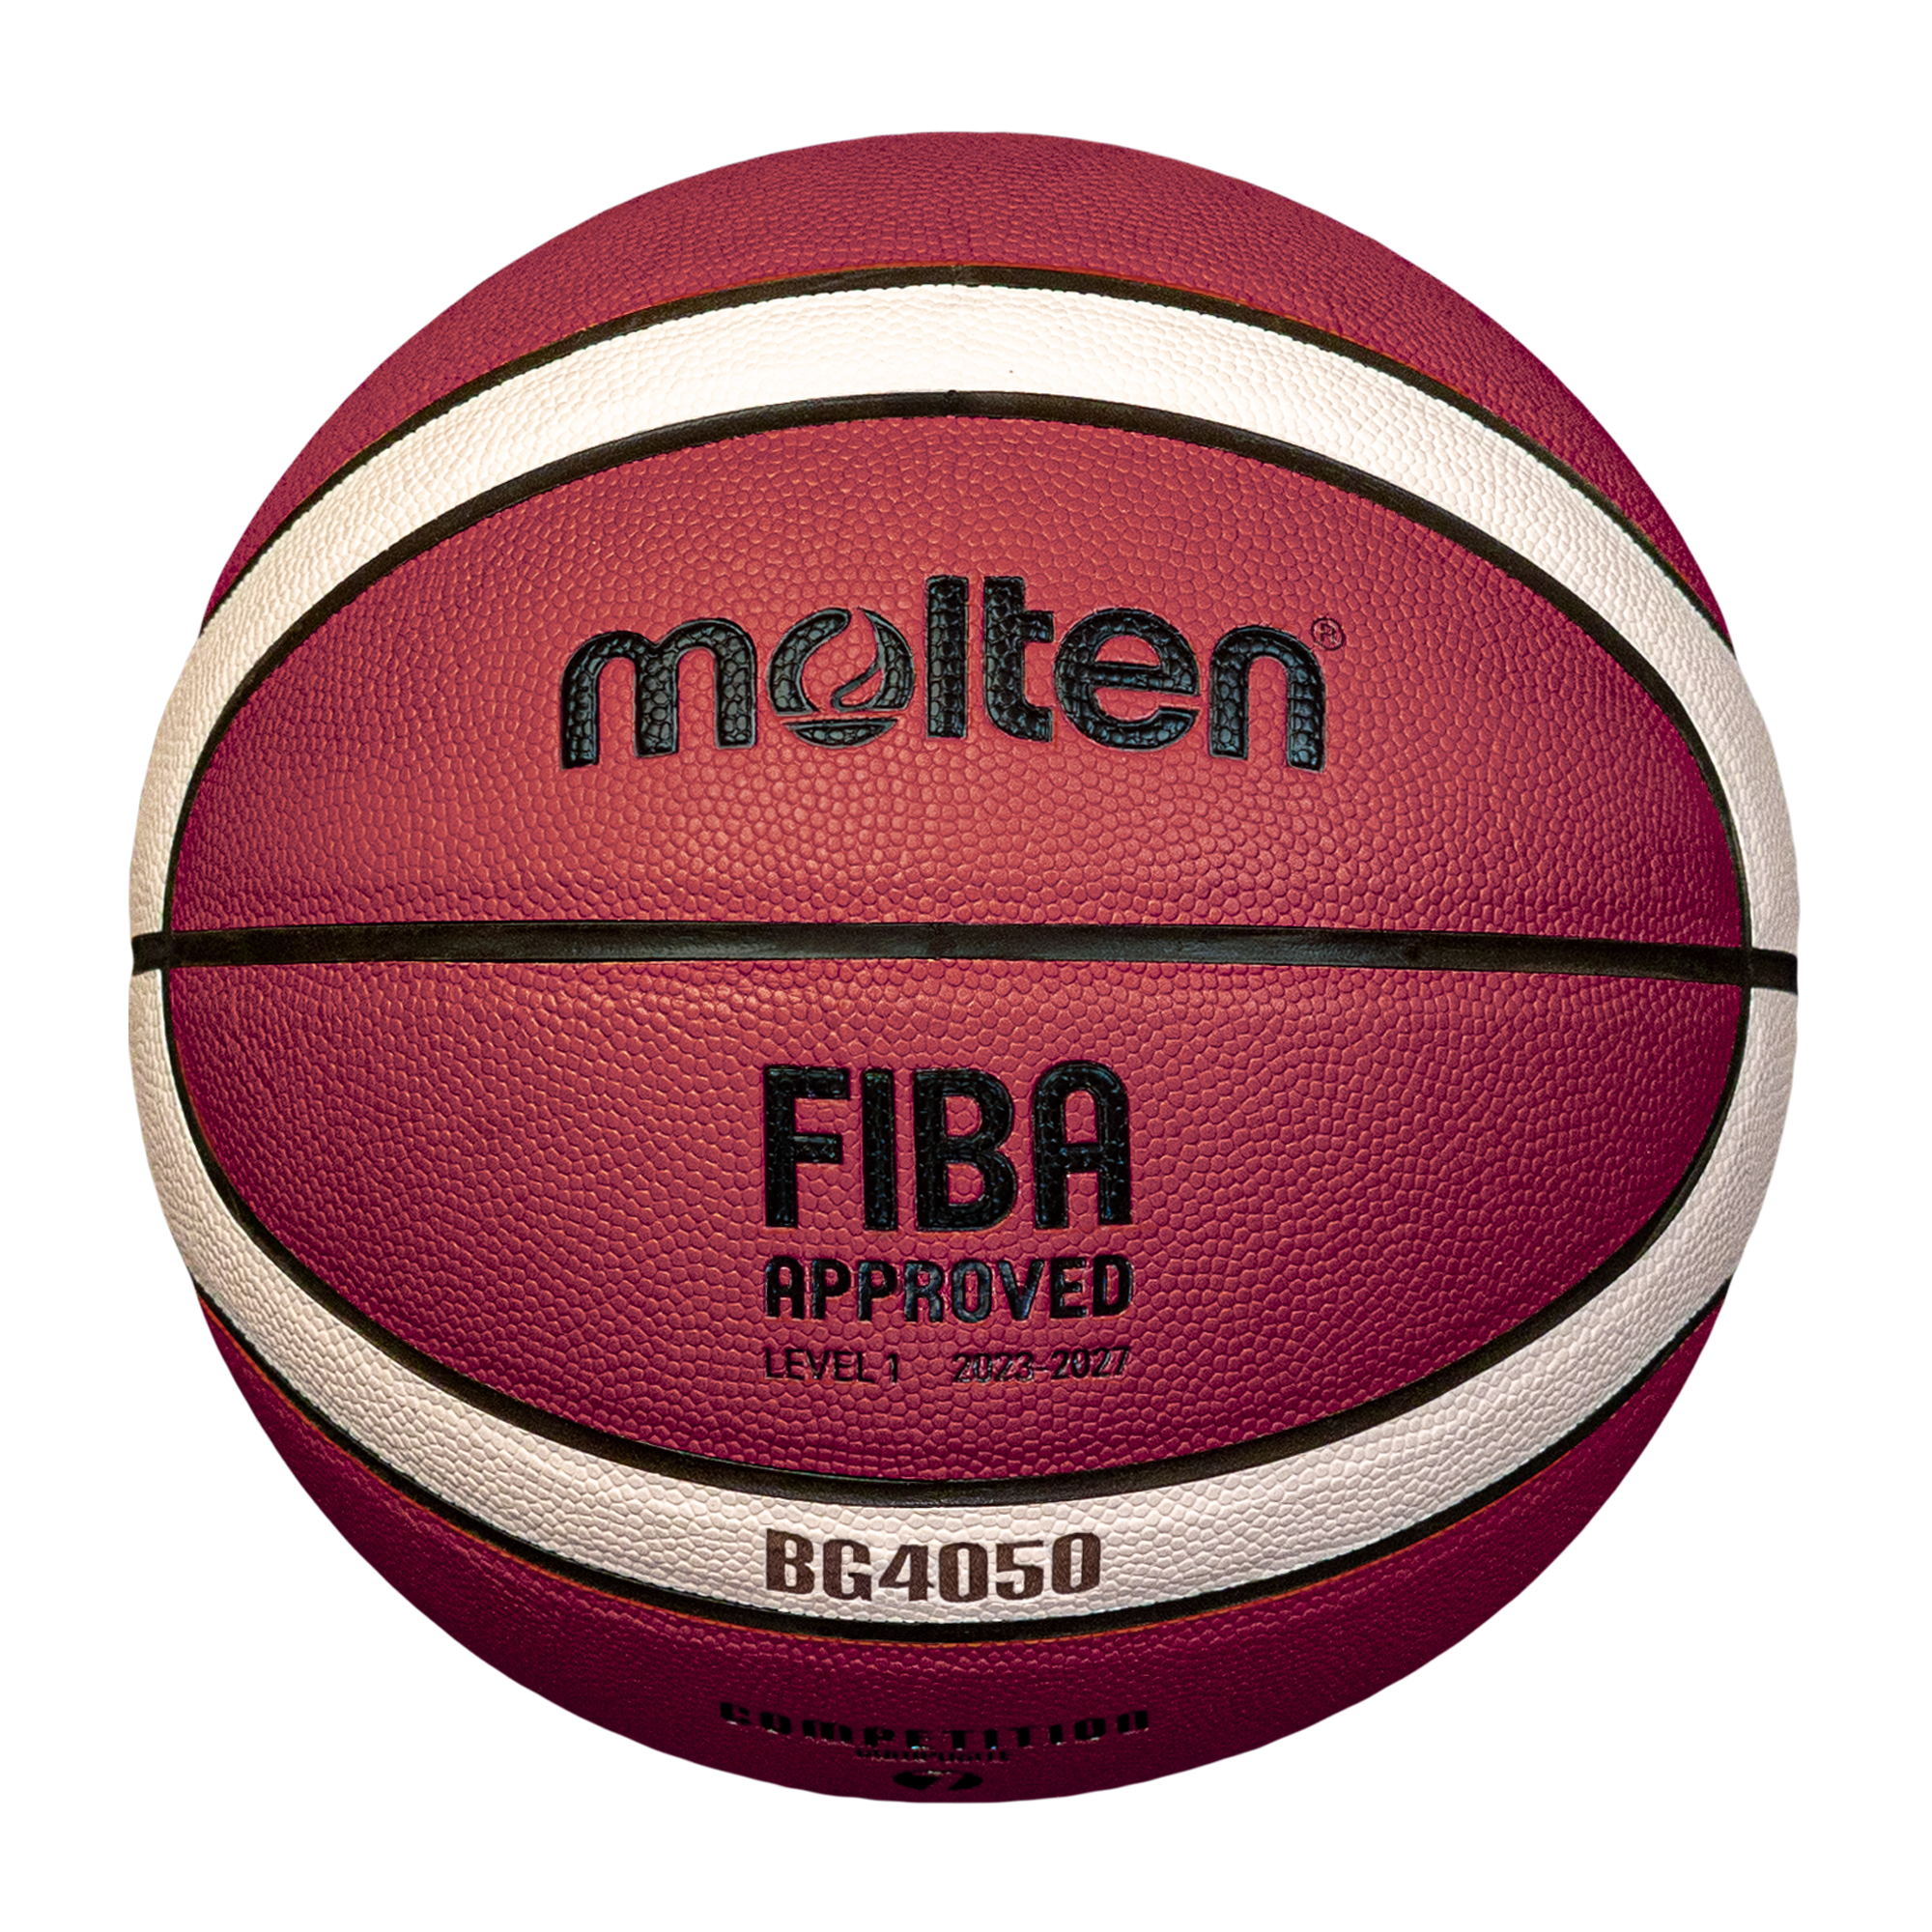 Basketball Gr. 7 | B7G4050-DBB